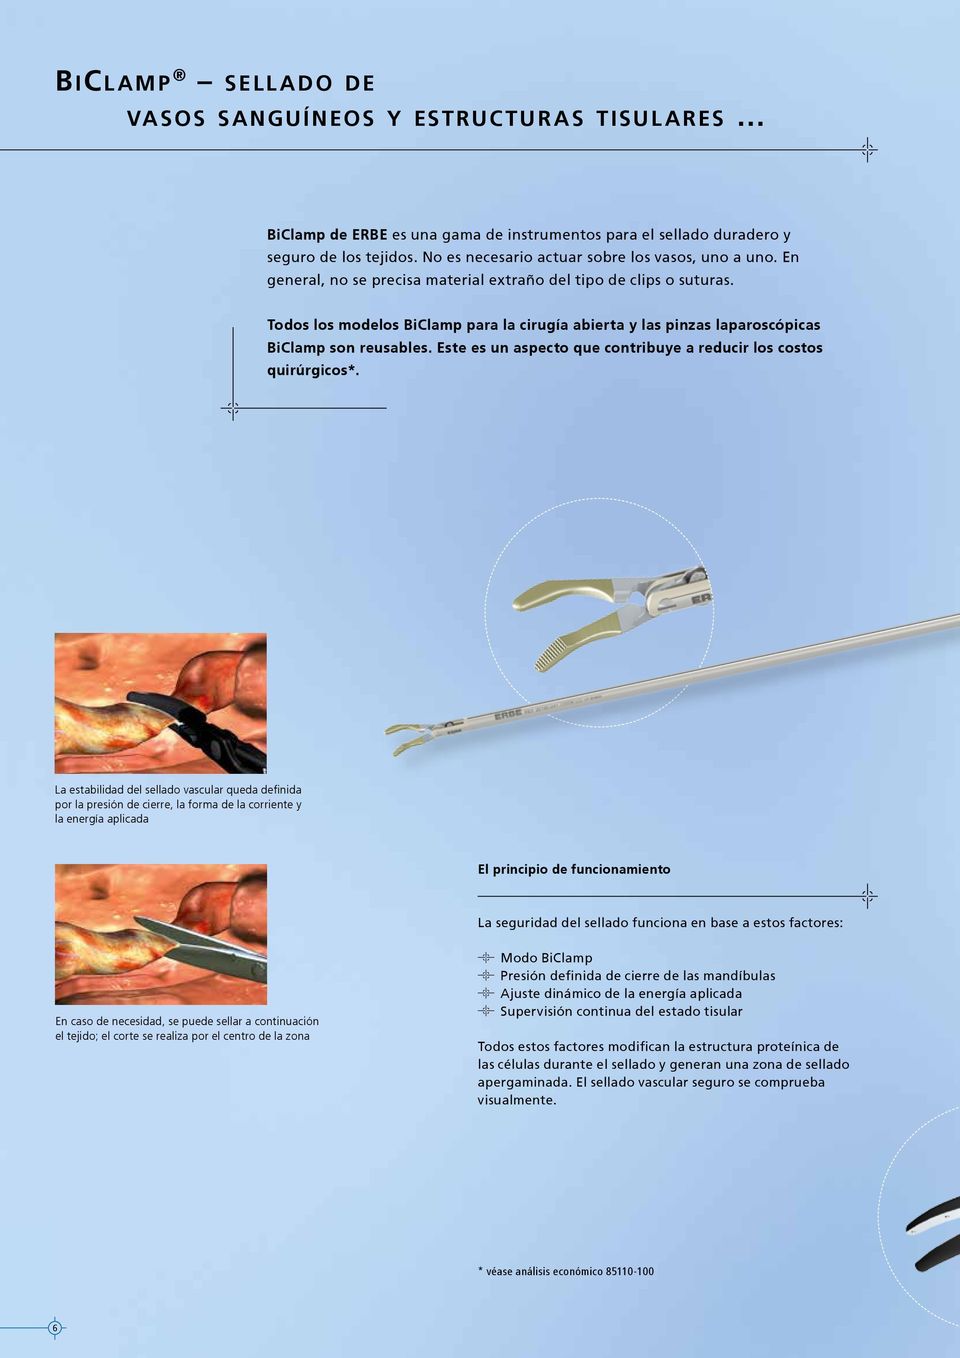 Todos los modelos BiClamp para la cirugía abierta y las pinzas laparoscópicas BiClamp son reusables. Este es un aspecto que contribuye a reducir los costos quirúrgicos*.